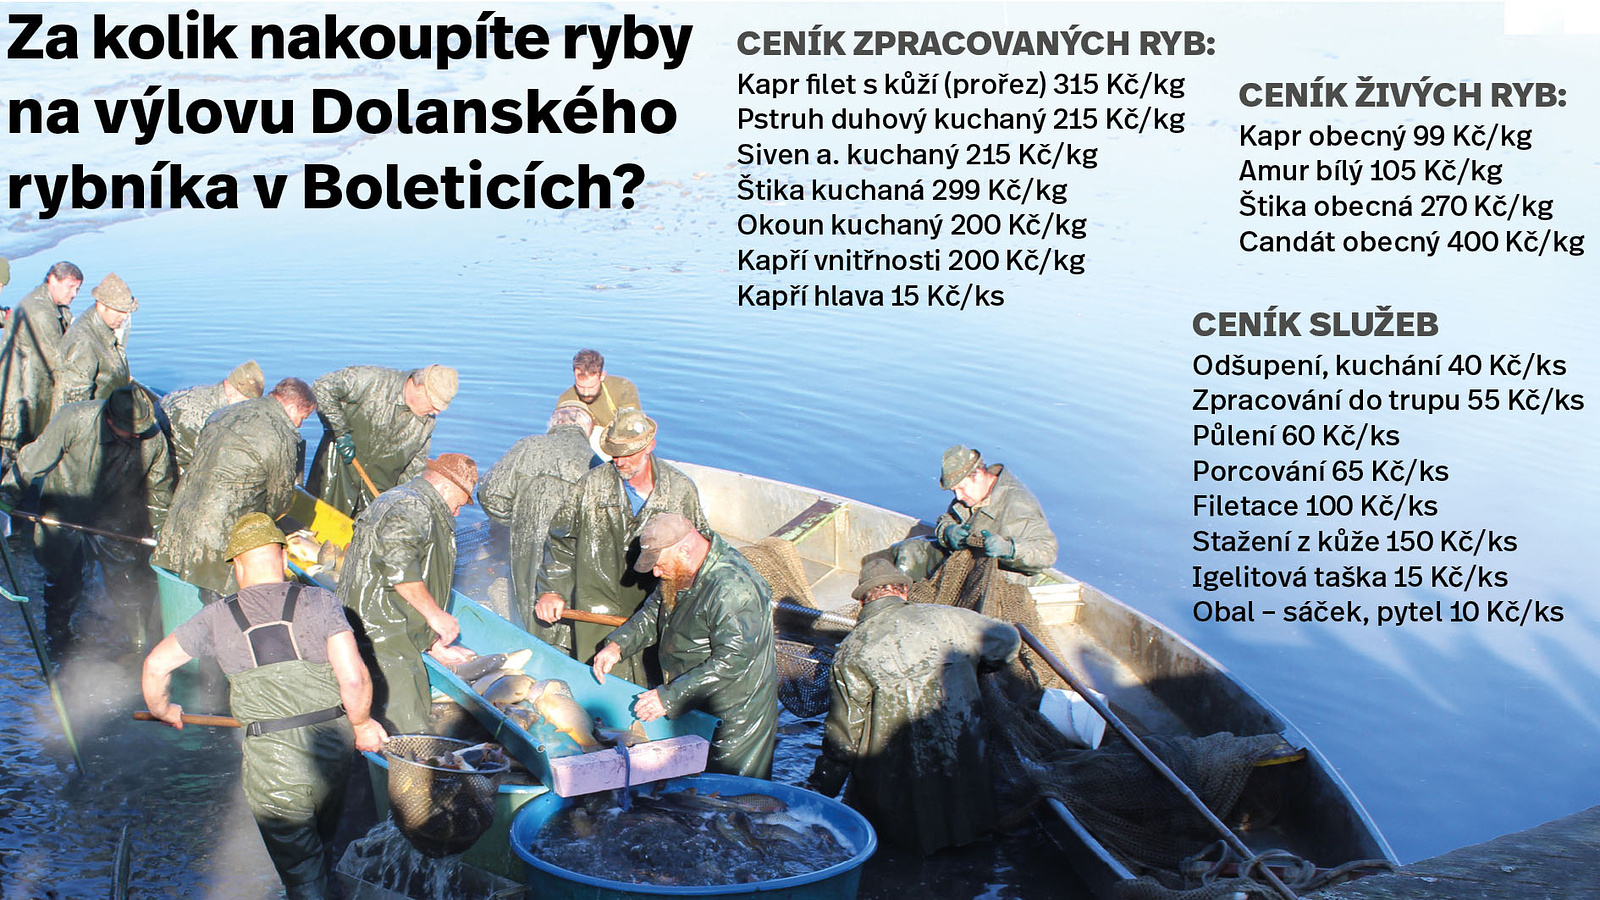 V sobotu je výlov v Boleticích. Kolik tam dáte za ryby a za maso? Podívejte  se - Českokrumlovský deník